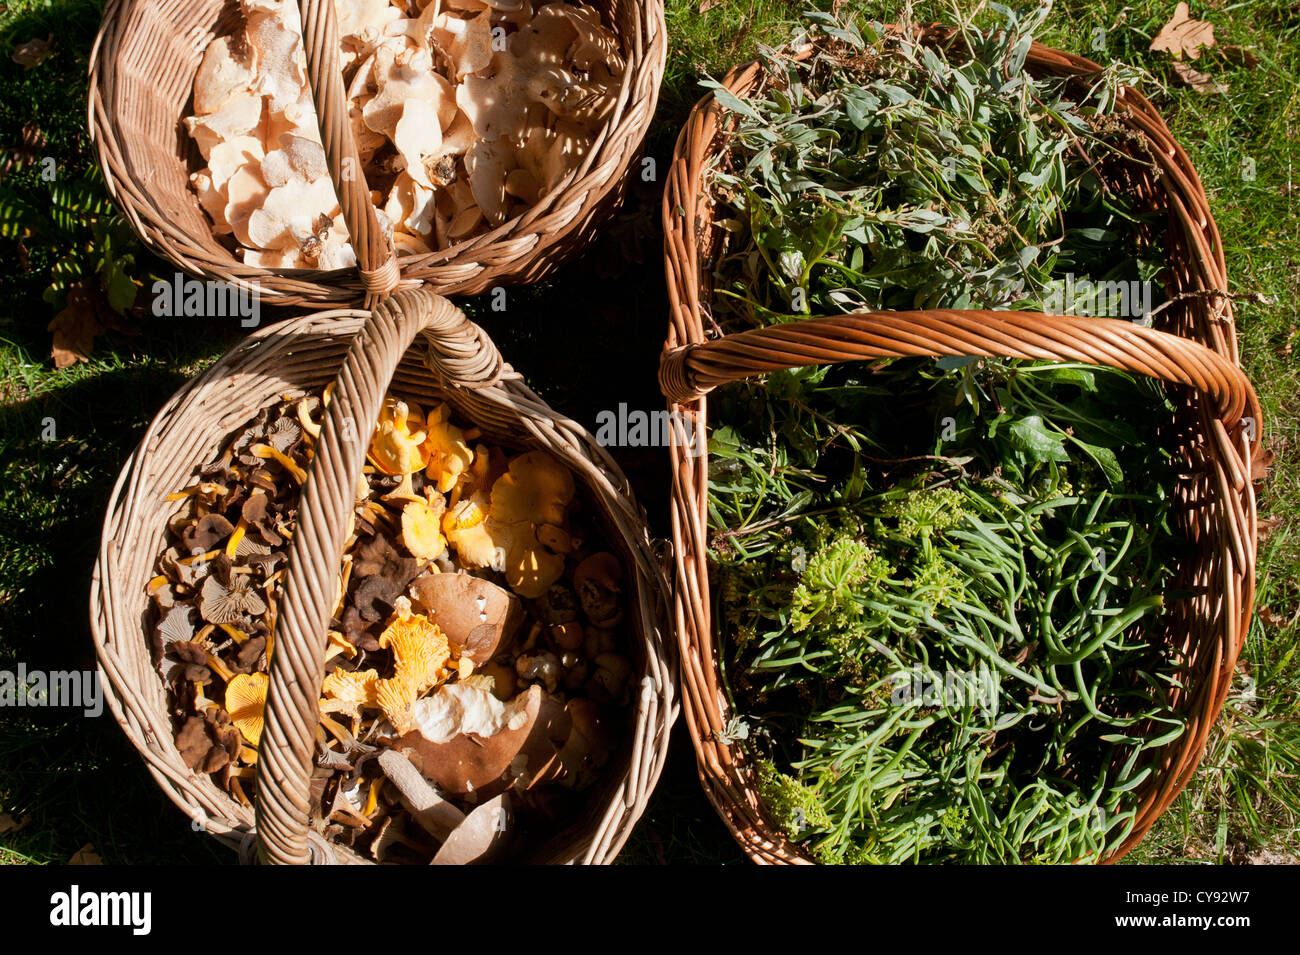 Funghi Foraged e altri bosco selvatico producono Foto Stock